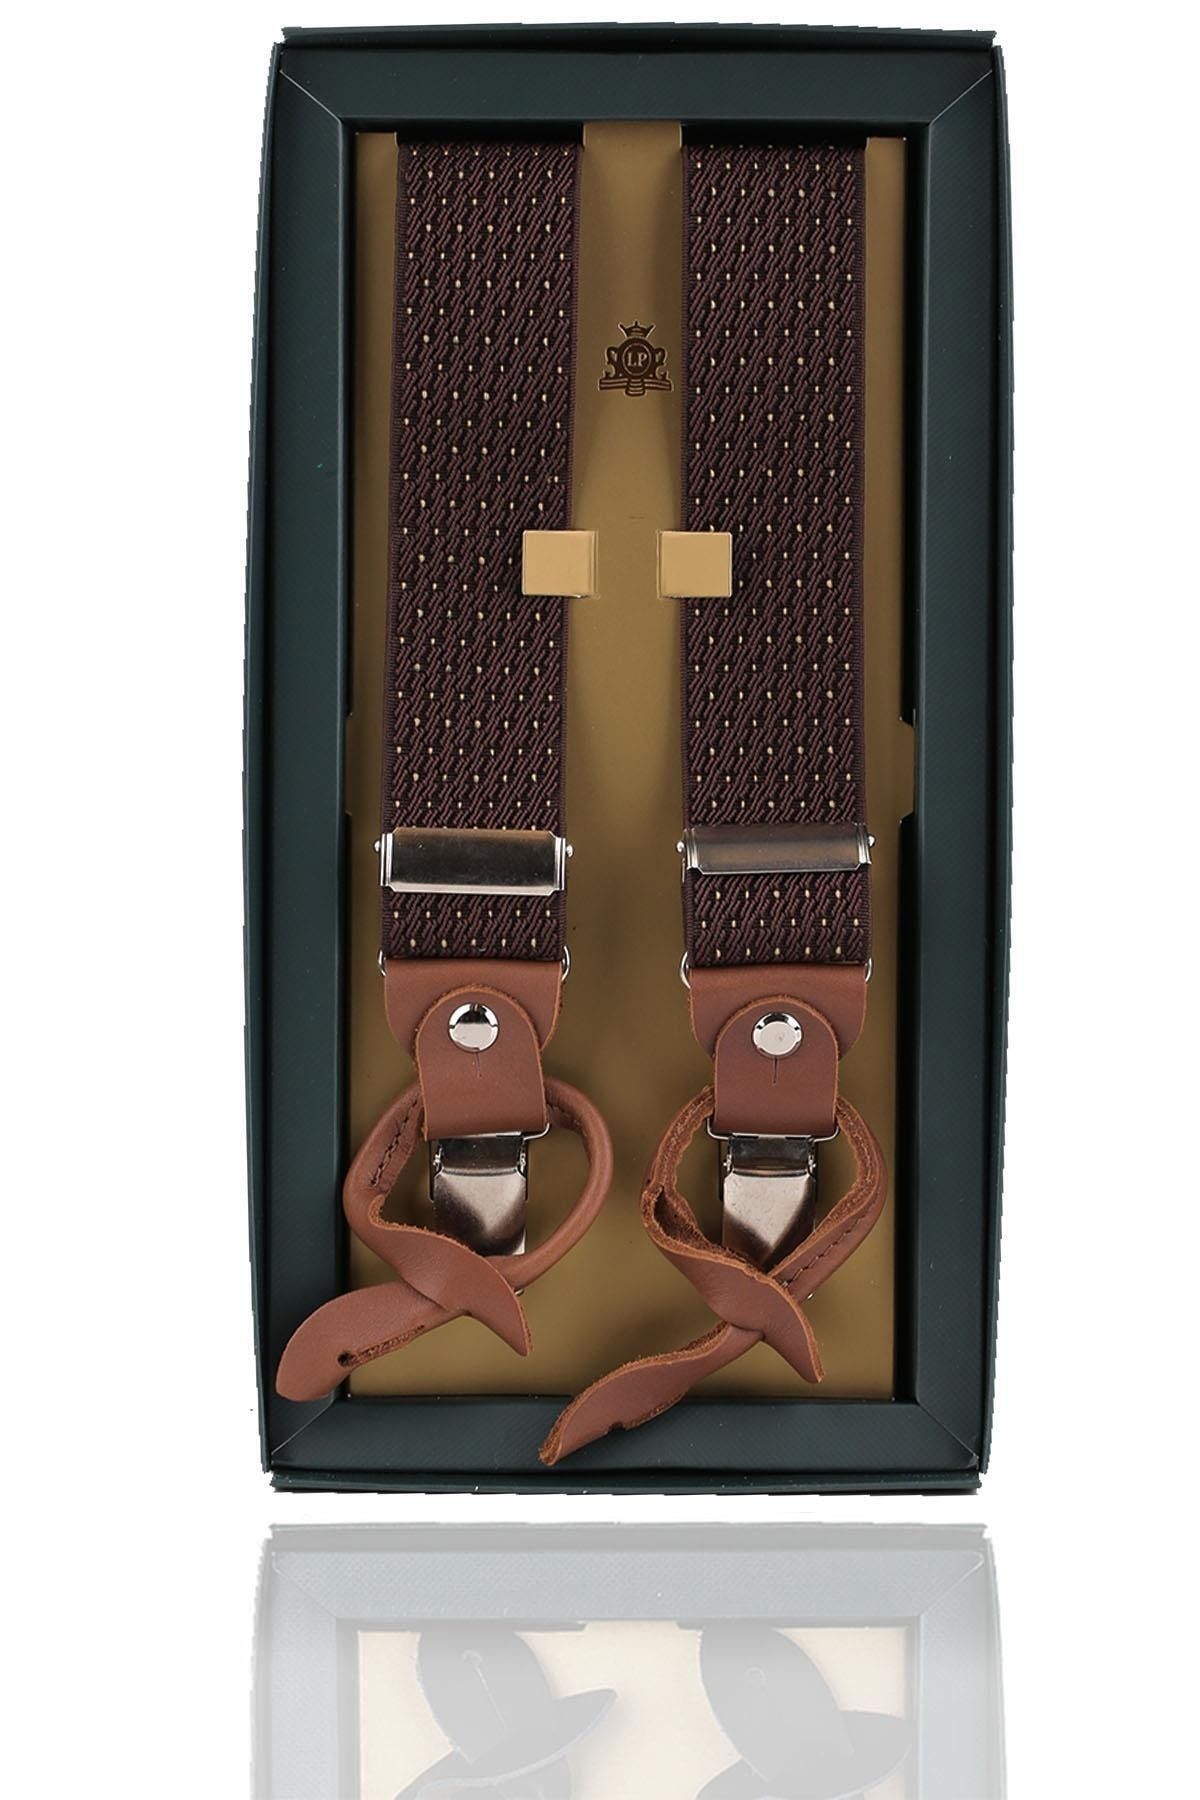 Kravatkolik Kahverengi Deri Bağlantılı Düğme Delikli Jakarlı Pantolon Askısı PAN147